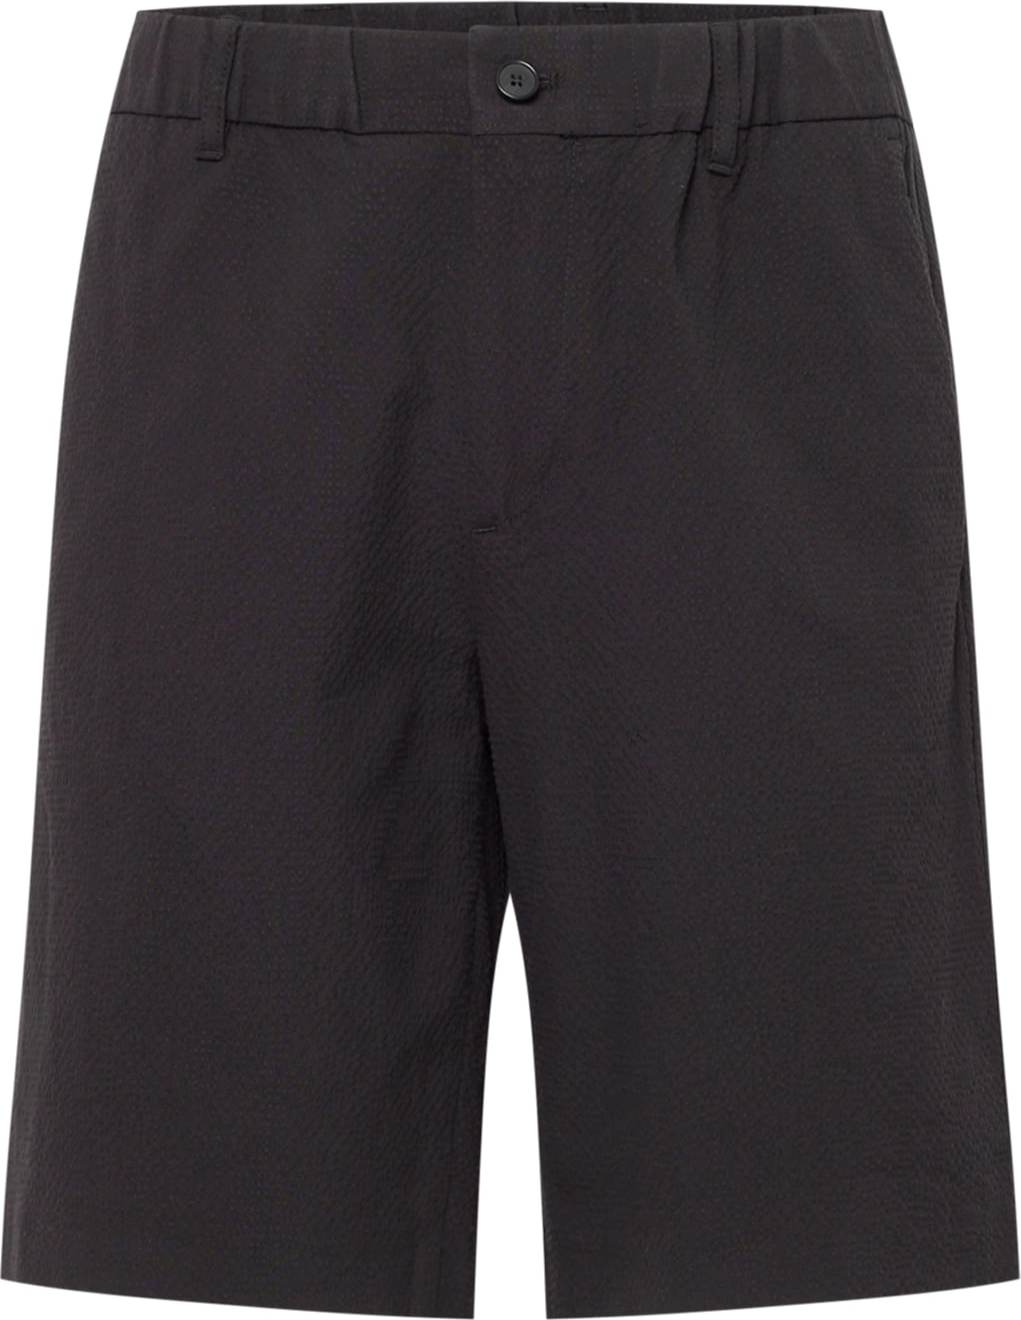 Chino kalhoty 'Theodor' NN07 černá